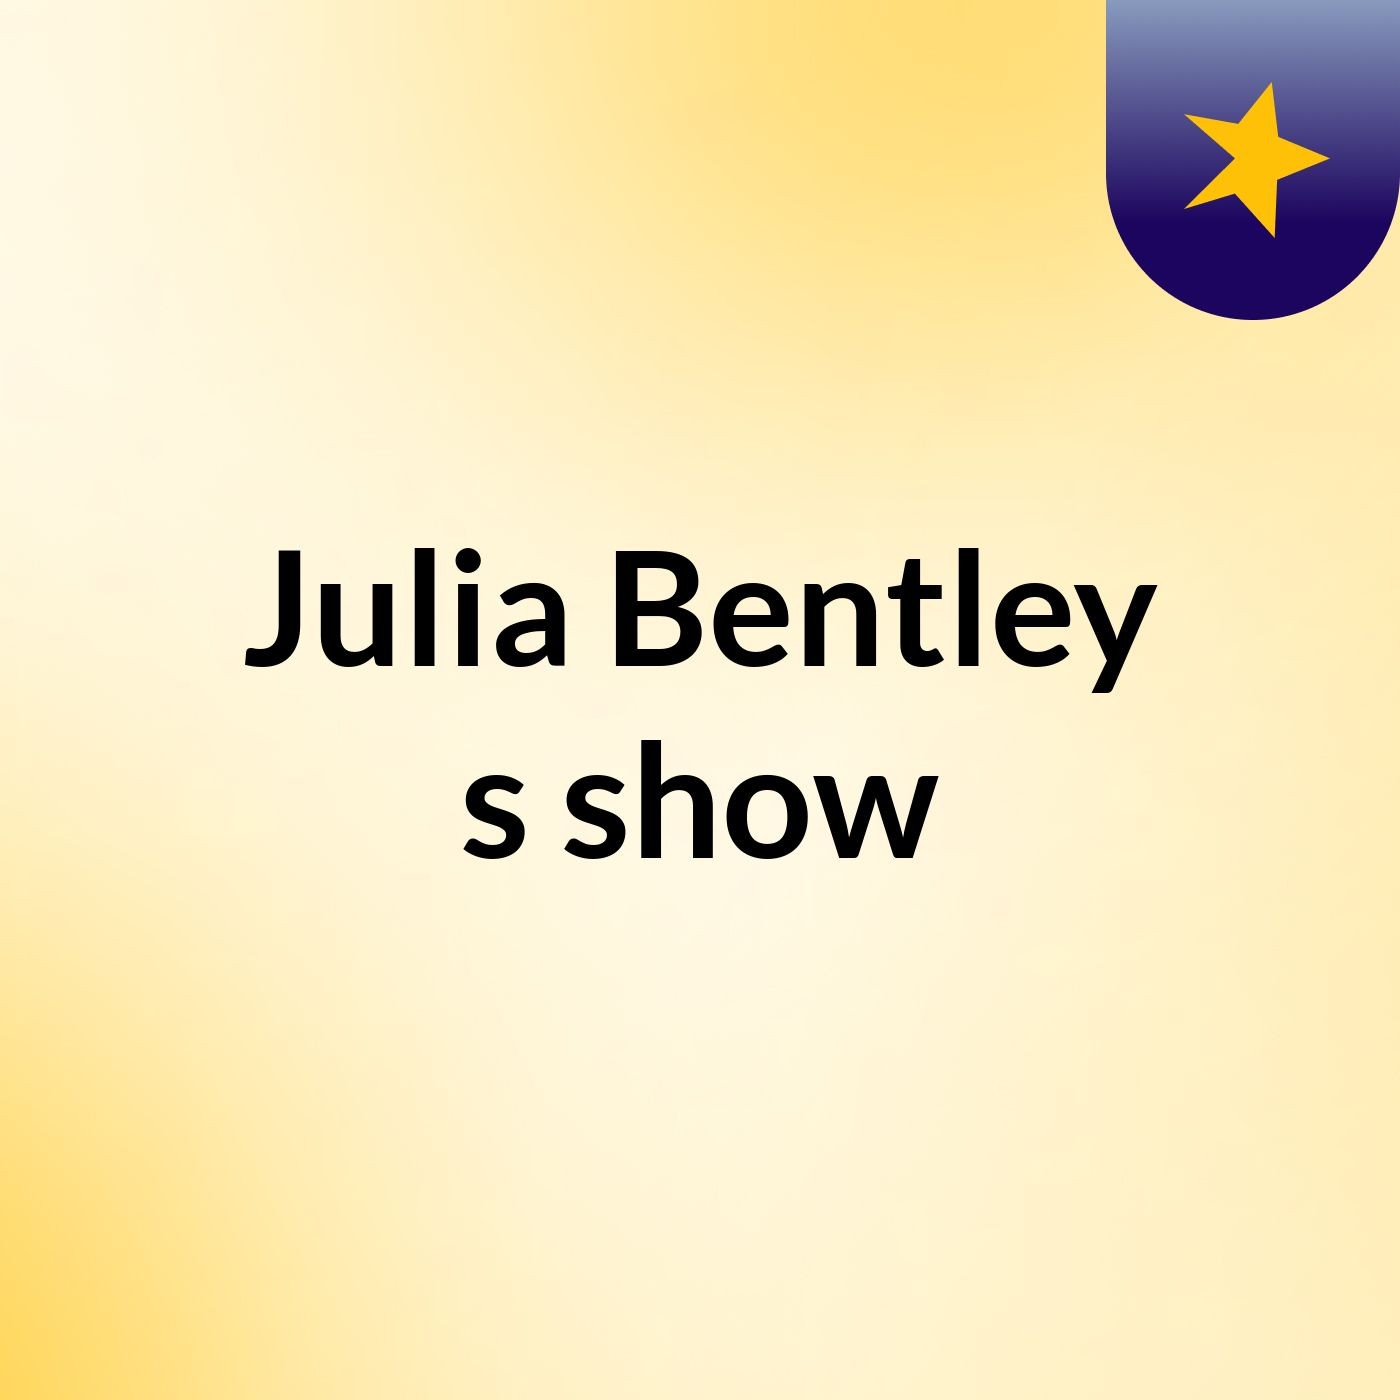 Episode 4 - Julia Bentley's show